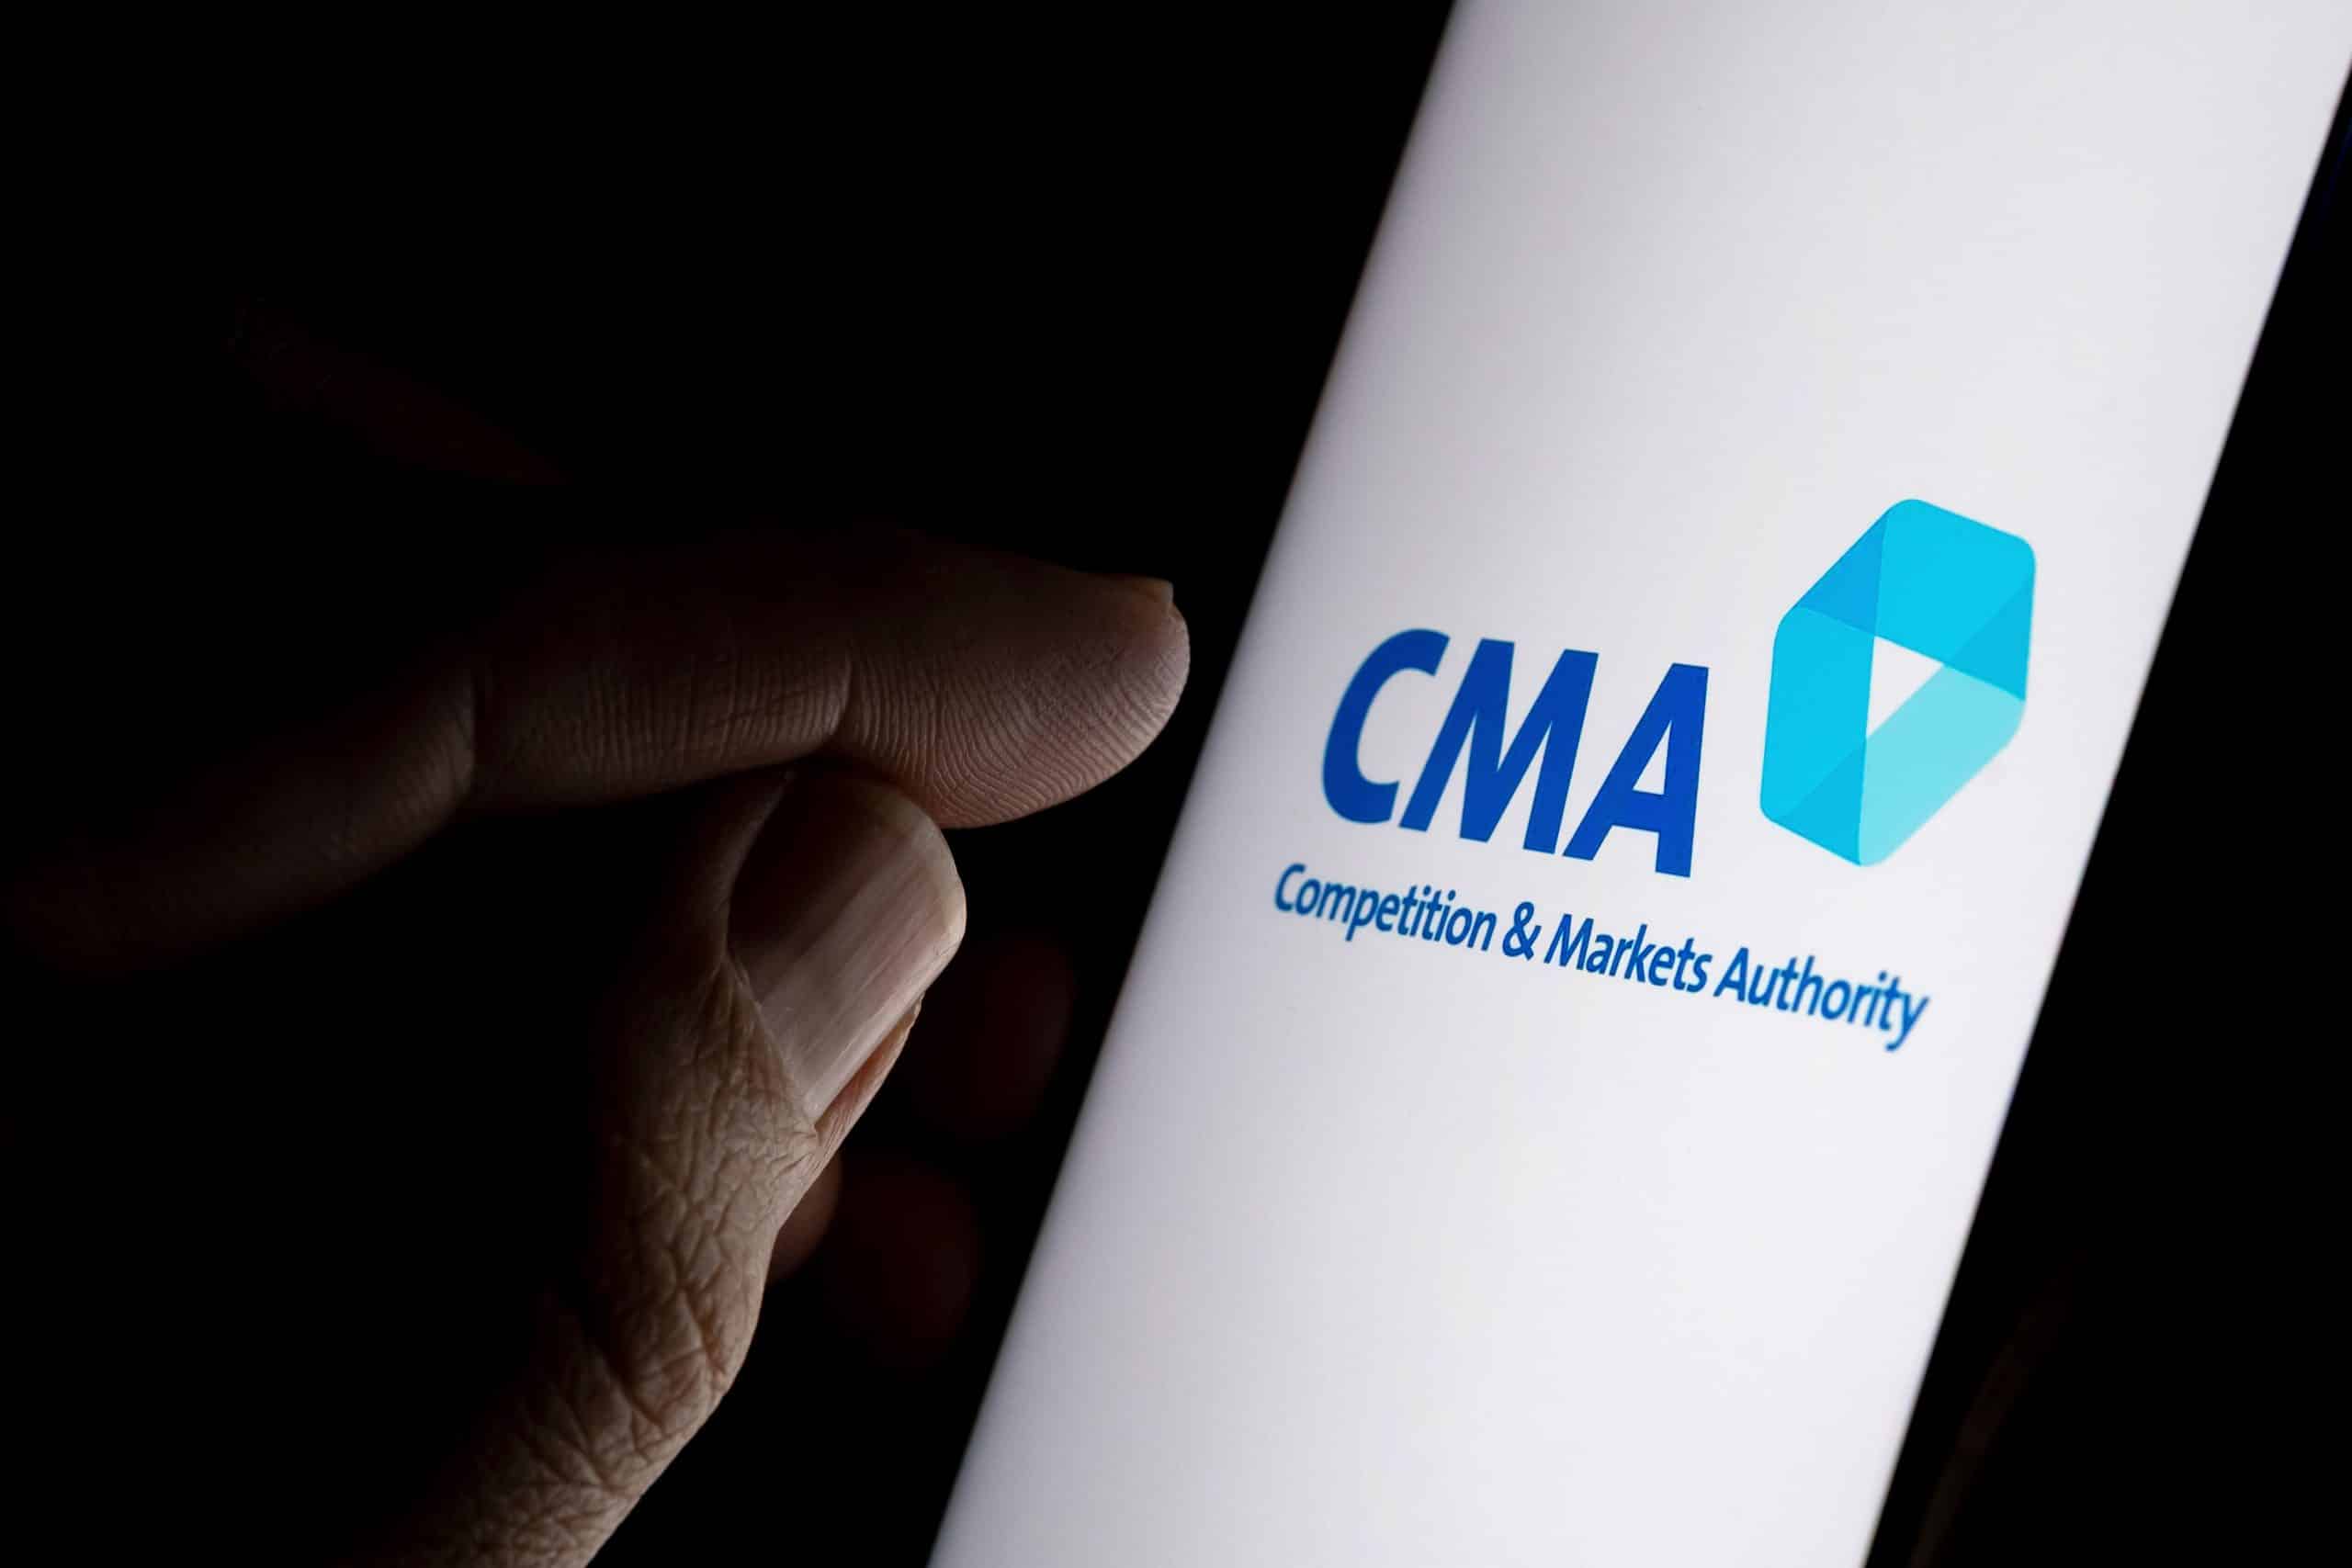 cma logo on phone